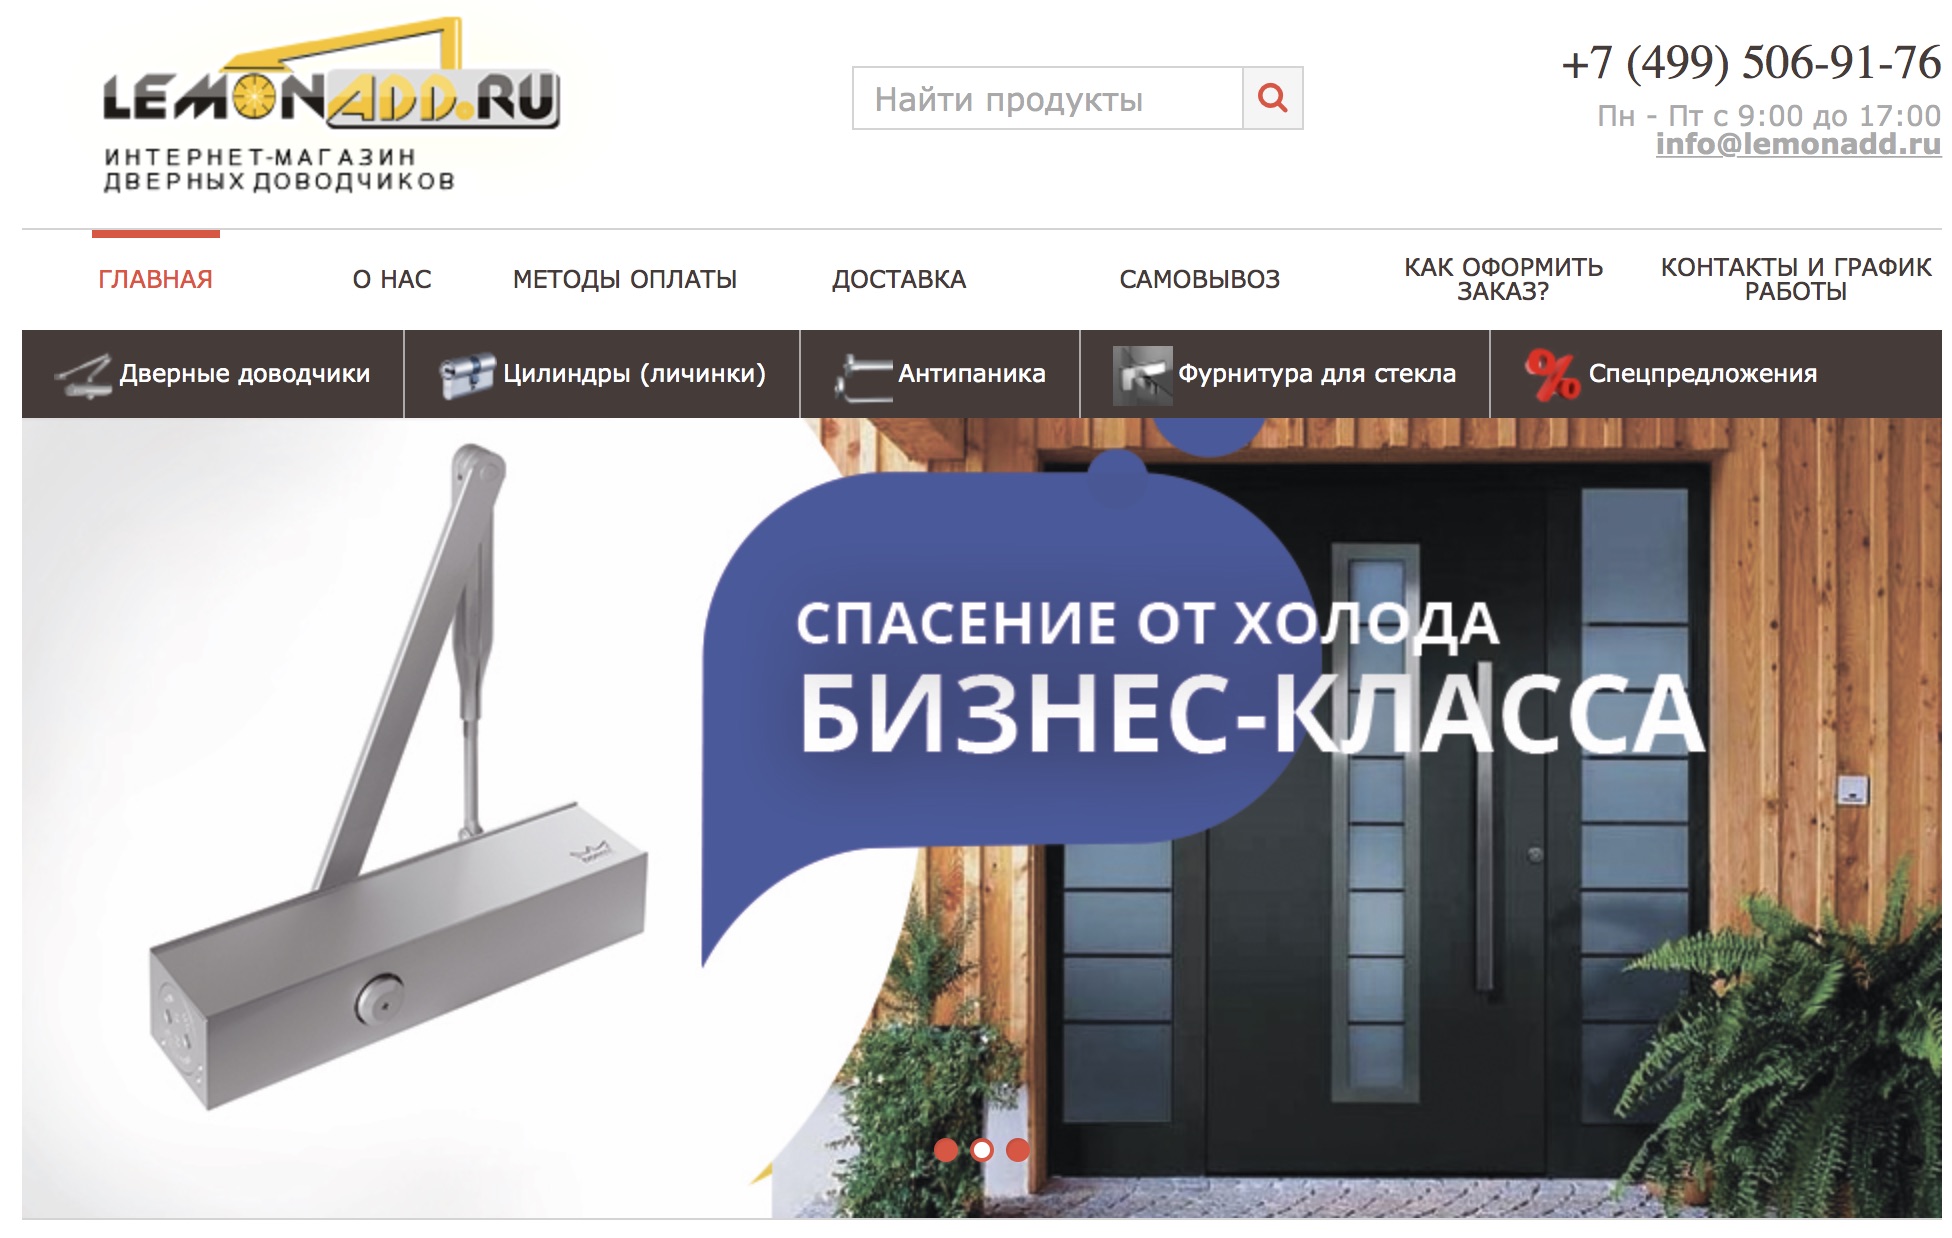 LemonAdd.ru — интернет-магазин дверных доводчиков